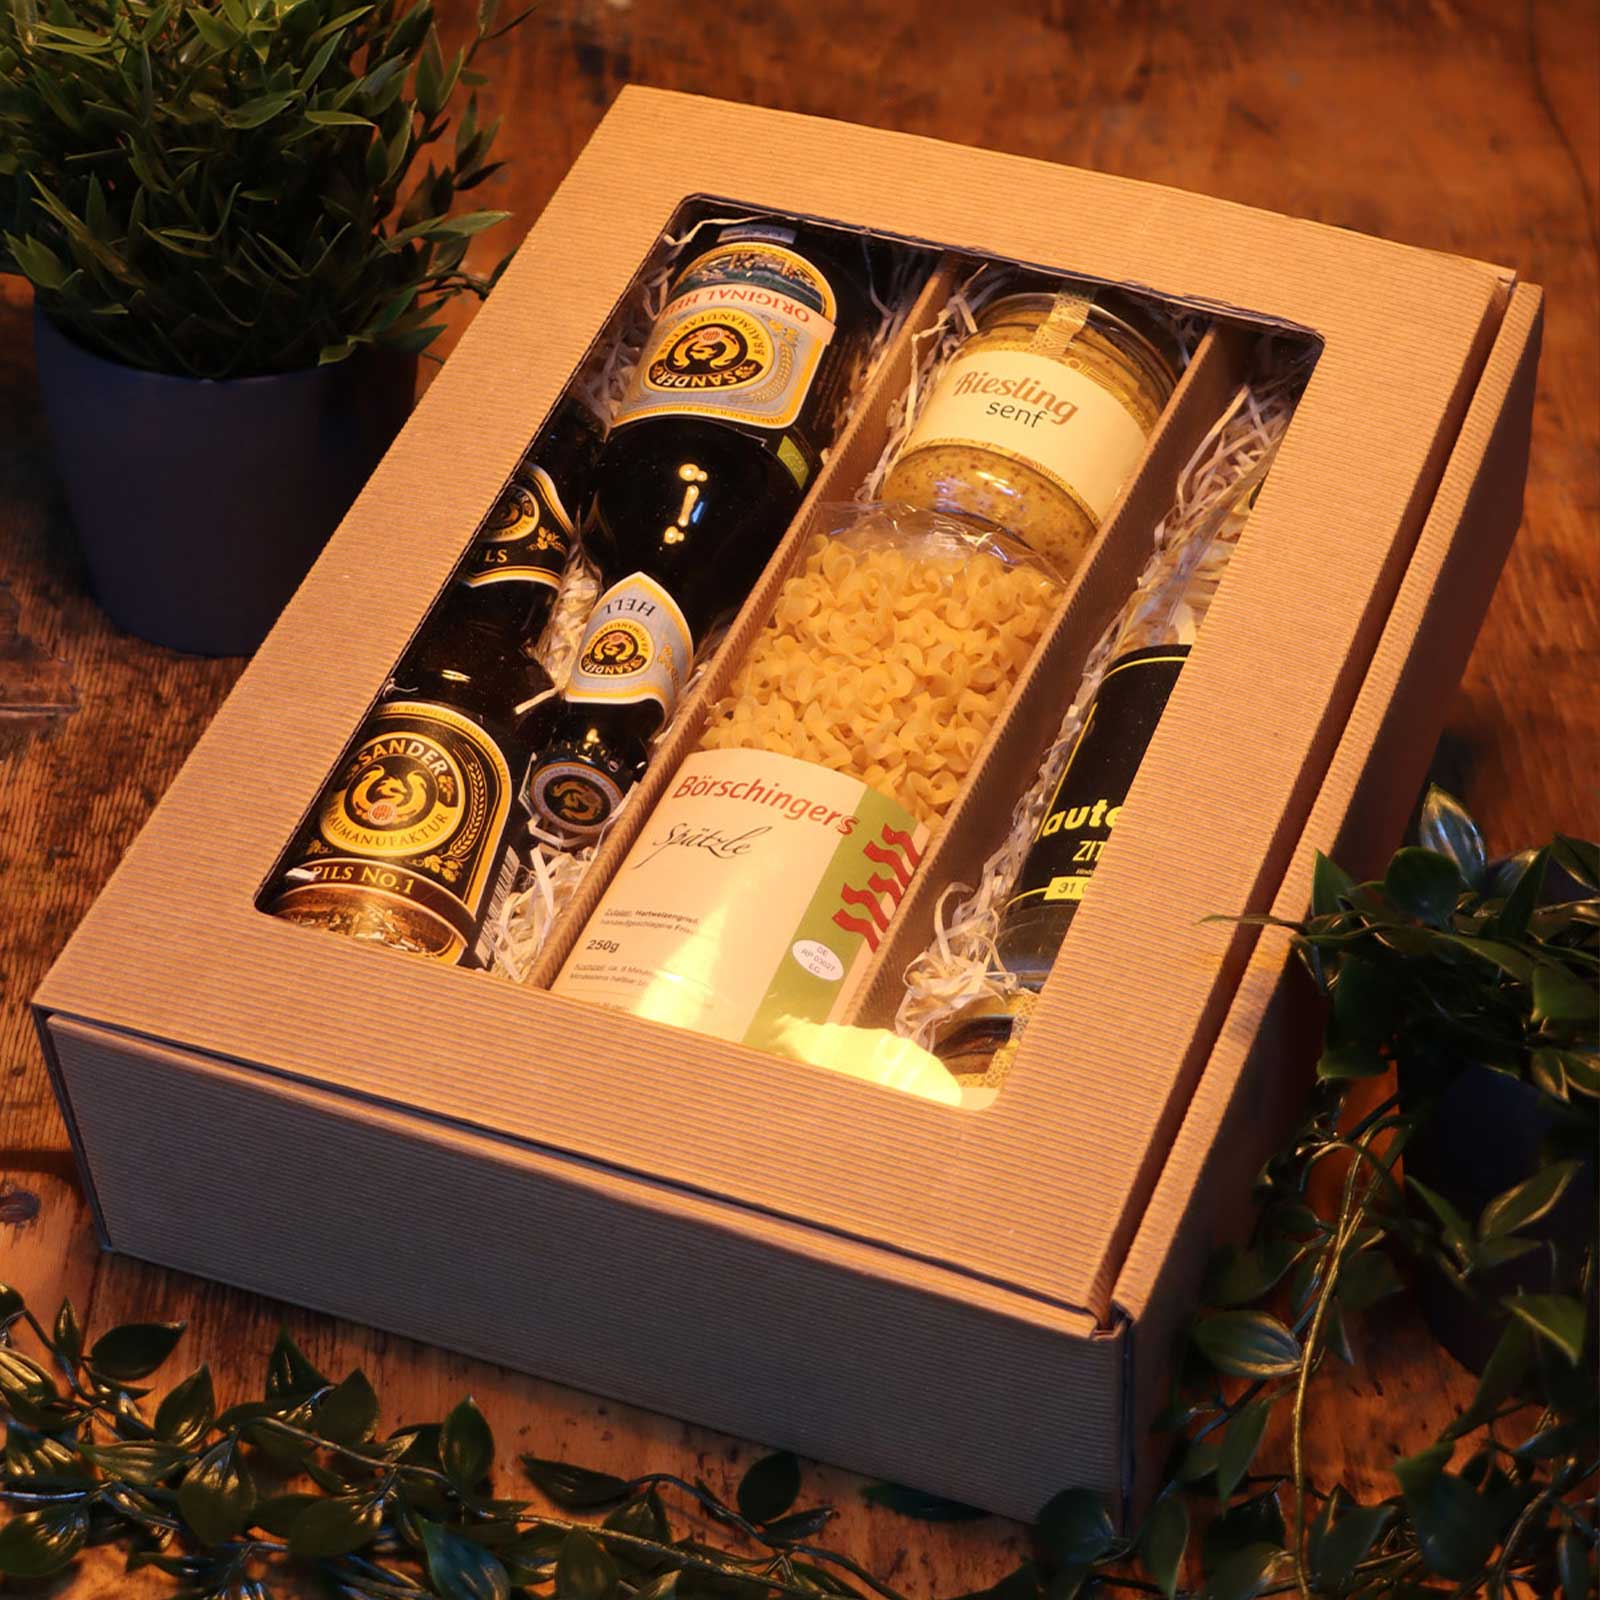 Die Bier Box gefüllt mit einer Auswahl von Bieren und Produkten zum Genießen.